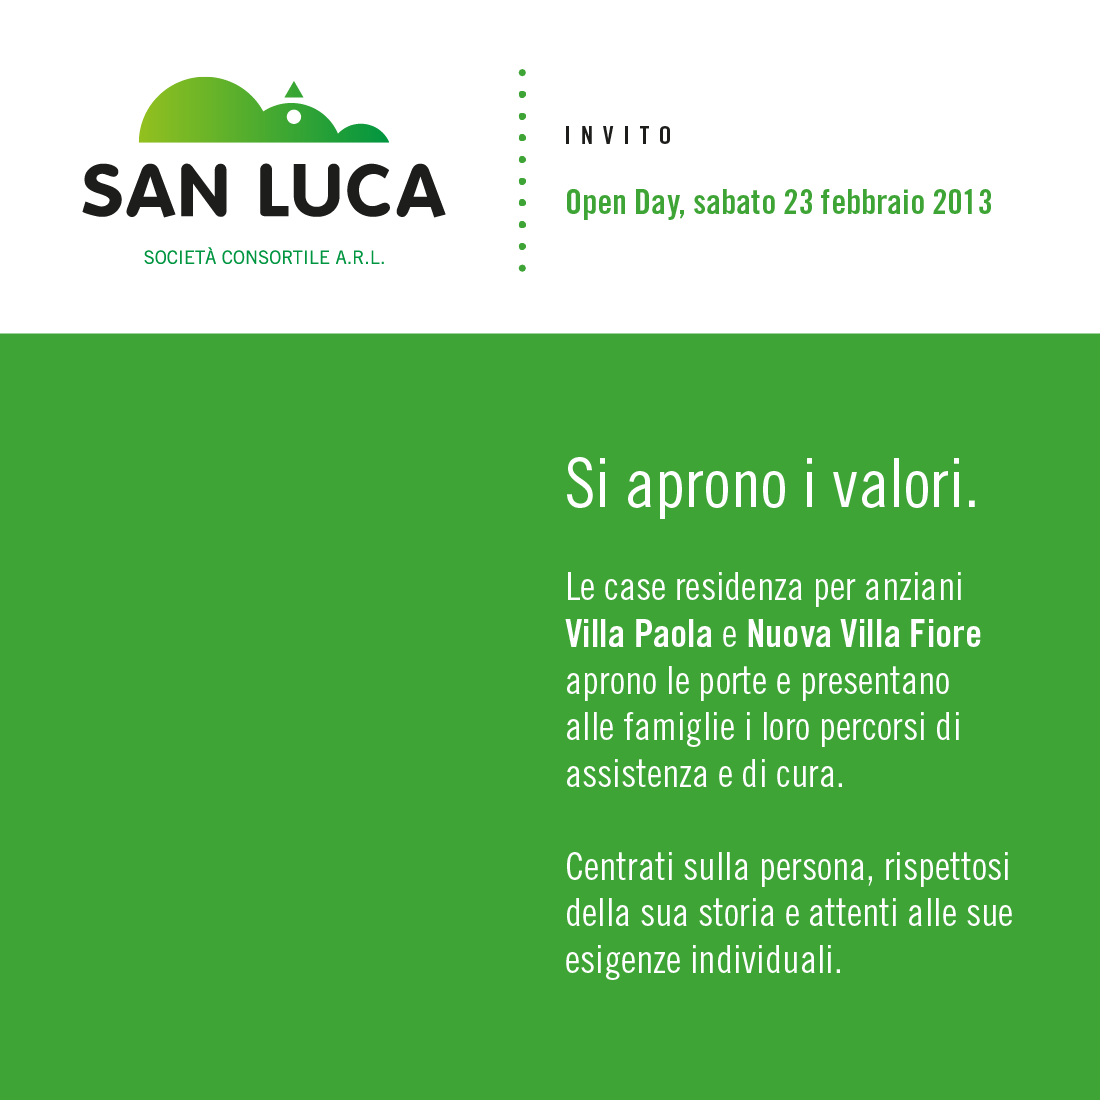 San Luca invito_Tavola disegno 1